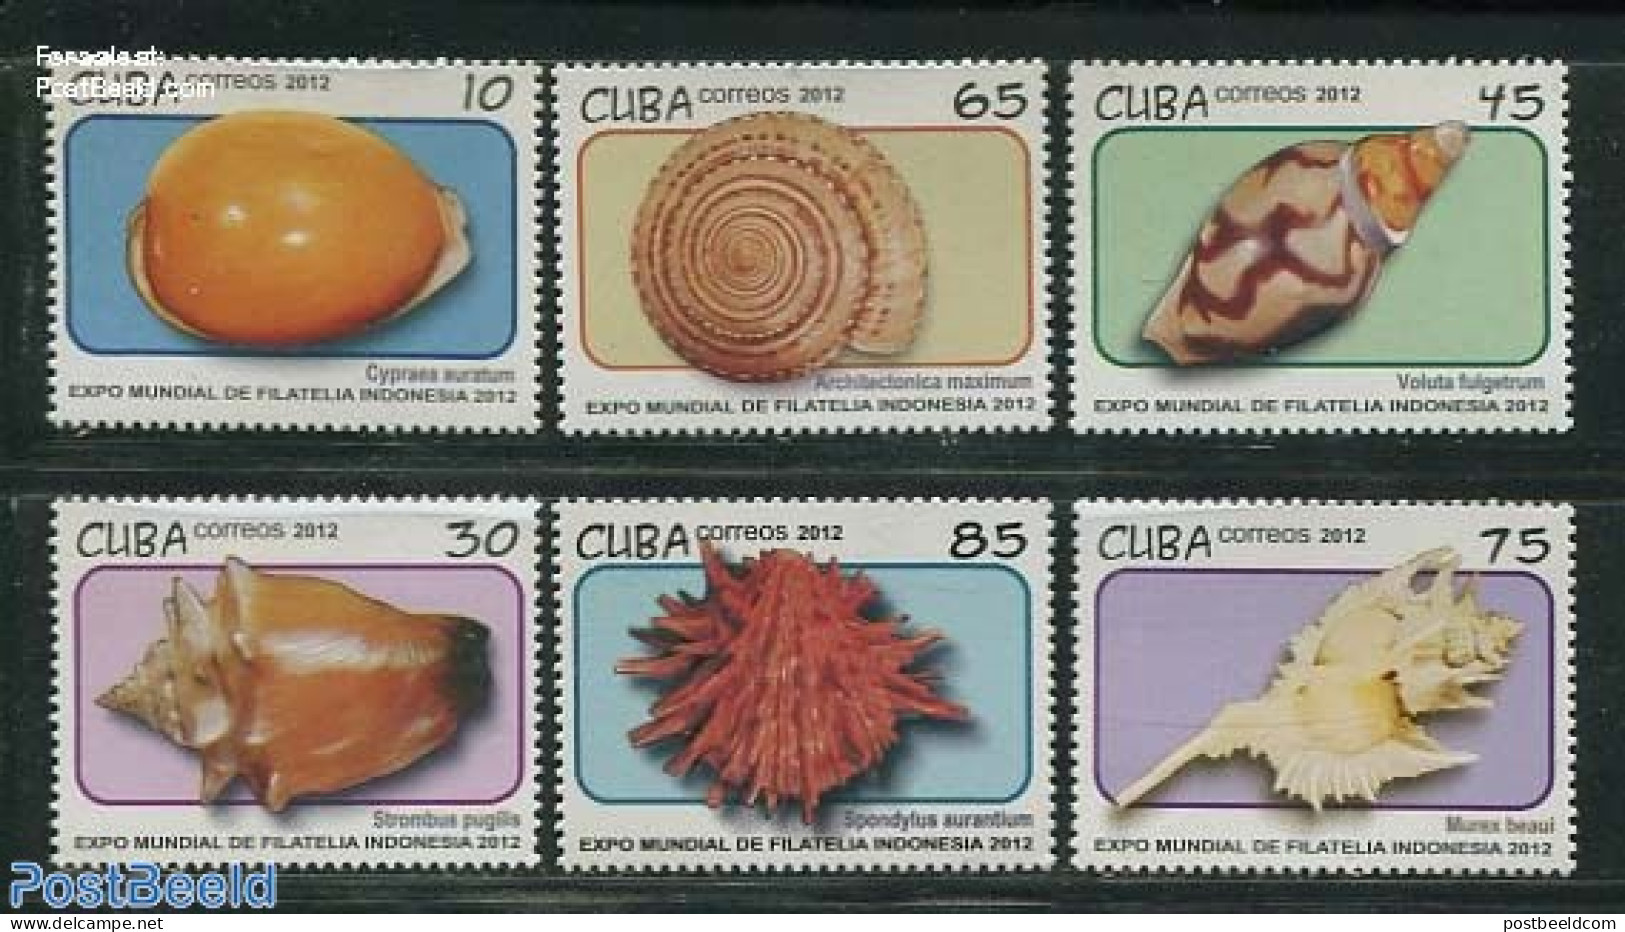 Cuba 2012 Shells 6v, Mint NH, Nature - Shells & Crustaceans - Neufs